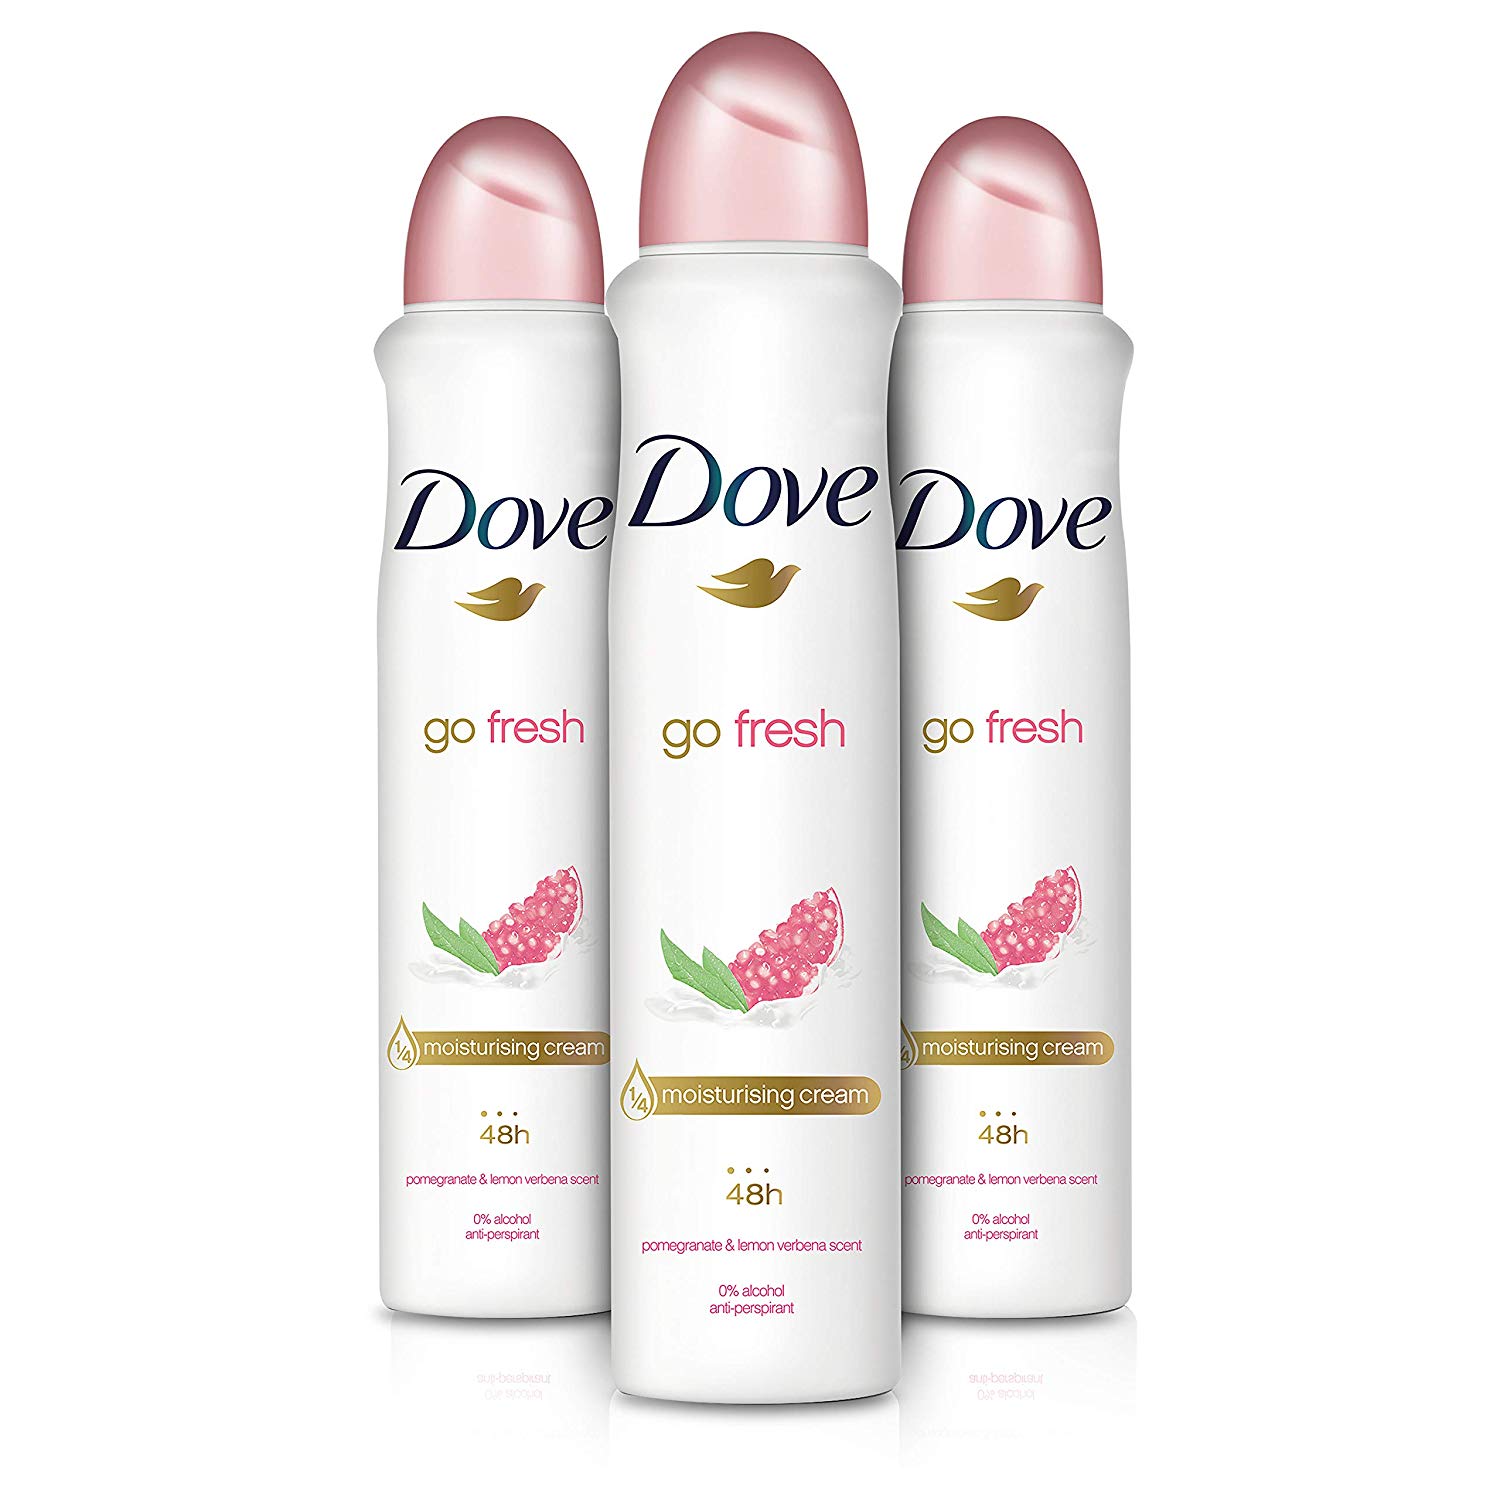 Pack de 3 Desodorantes Dove Go Fresh solo 6,9€